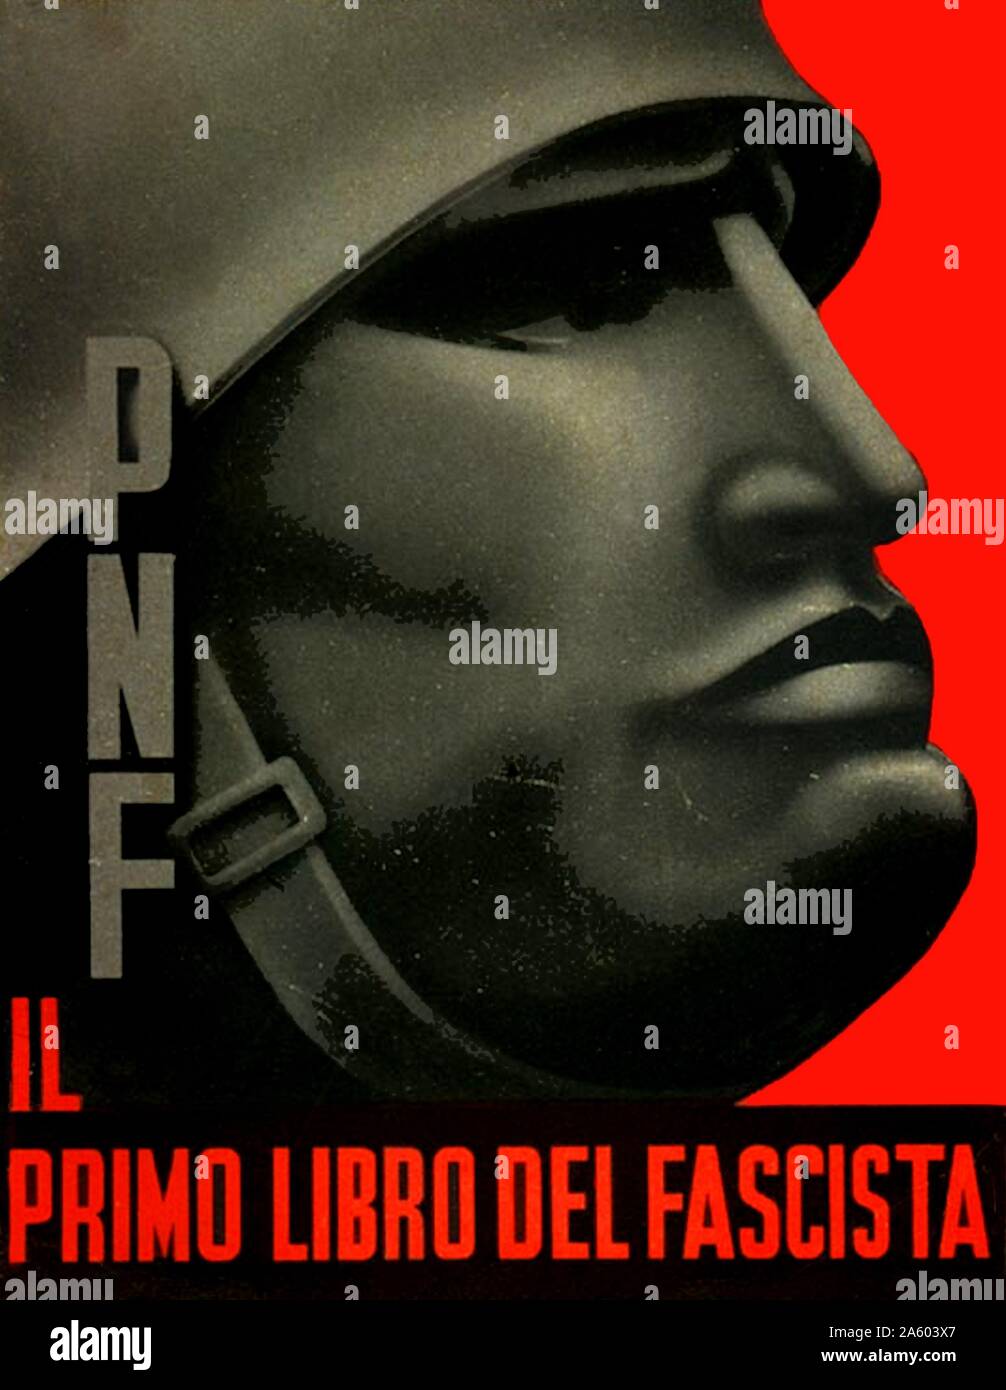 Propagandaplakat von Benito Mussolini (1883-1945), ein italienischer Politiker, Journalist, Führer der faschistischen Partei und Premierminister von Italien. Vom 20. Jahrhundert Stockfoto